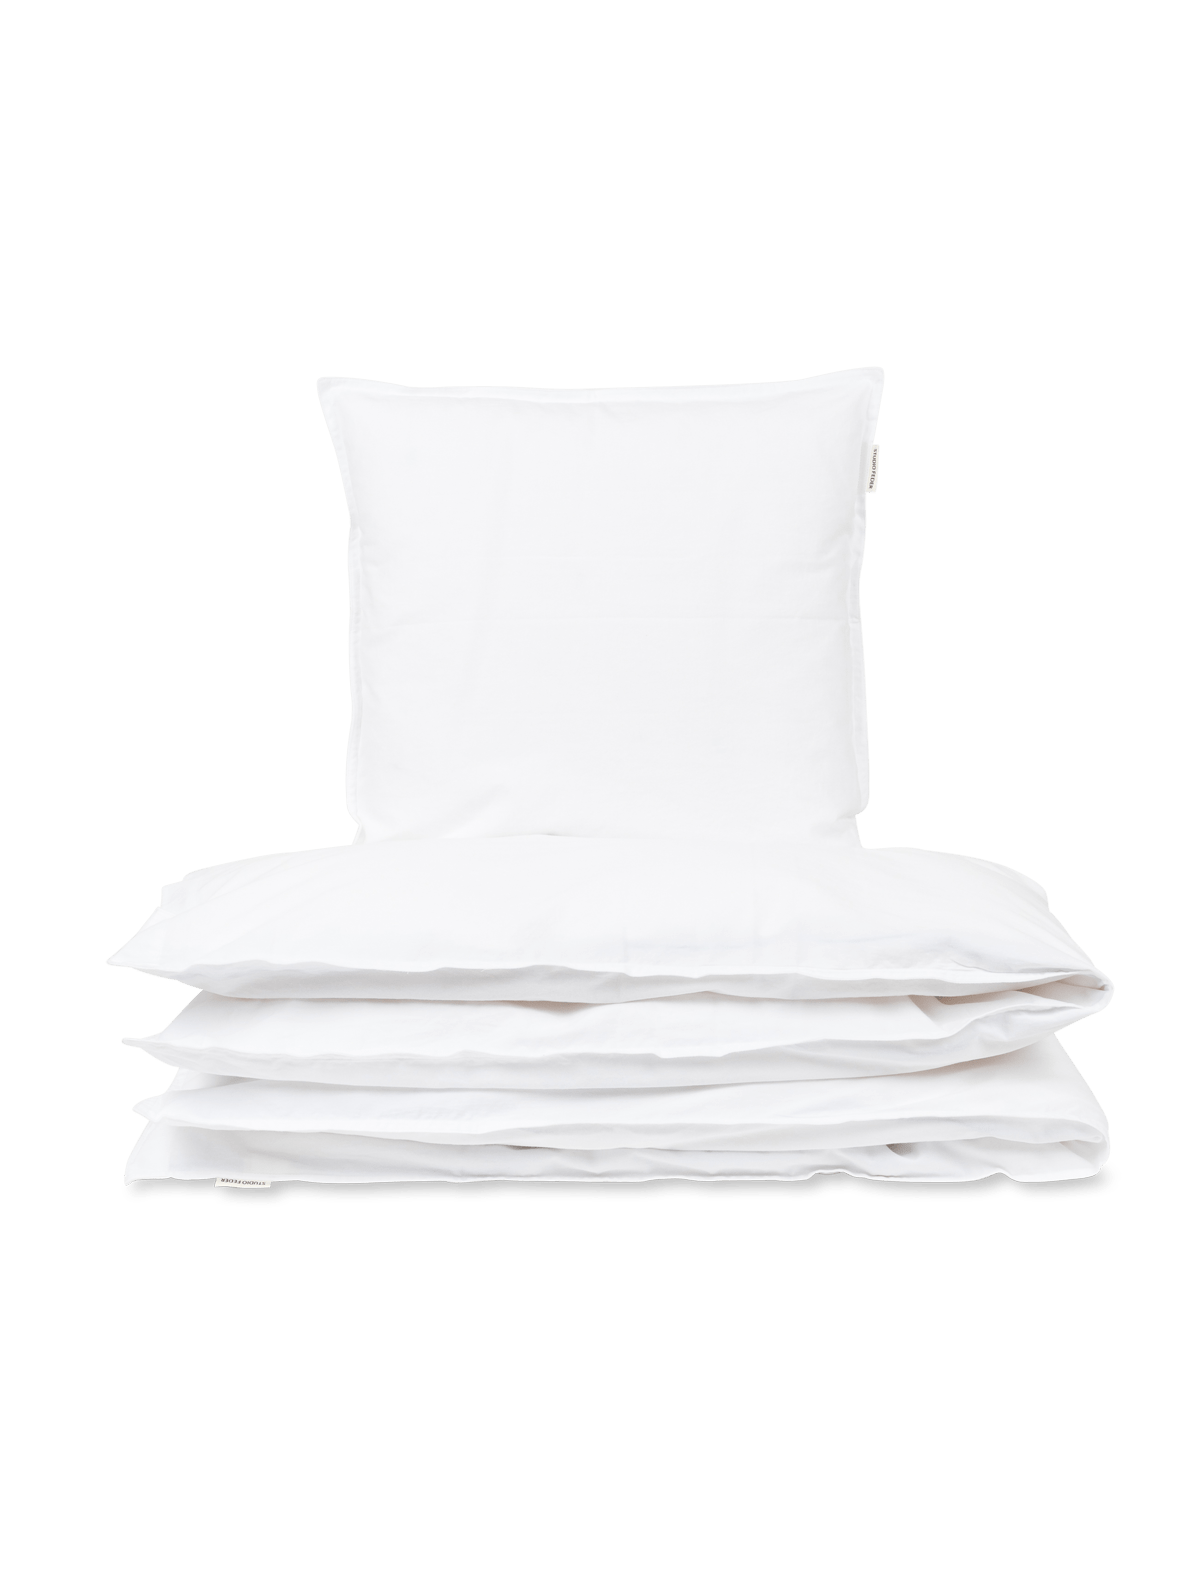 Bedding - Crisp White